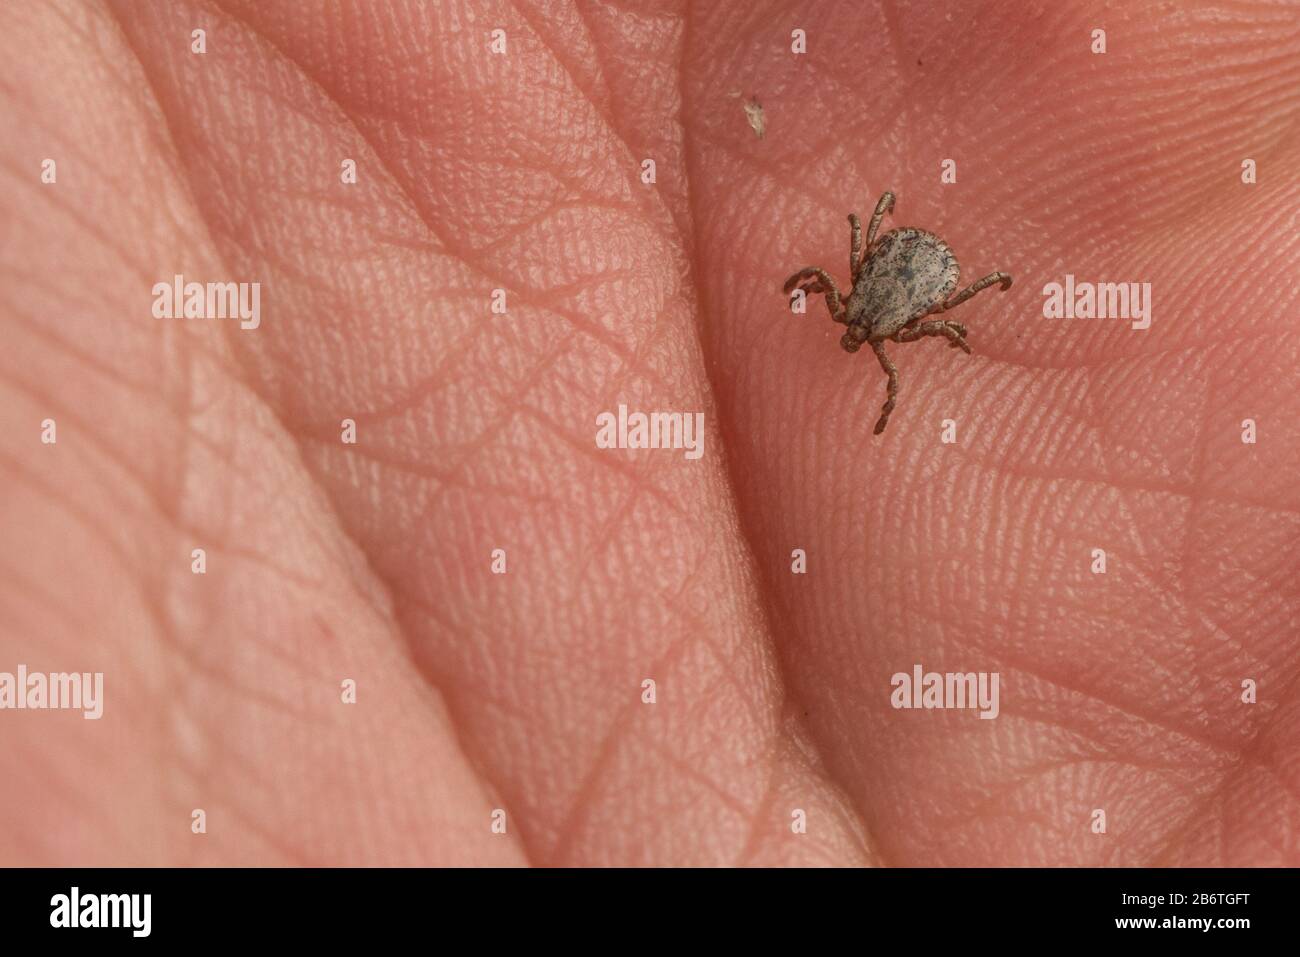 Eine winzige Zecke (Dermacentor occidentalis), ein Krankheitsvektor krabbelt in Berkeley, Kalifornien, auf der Hand der Fotografen. Stockfoto